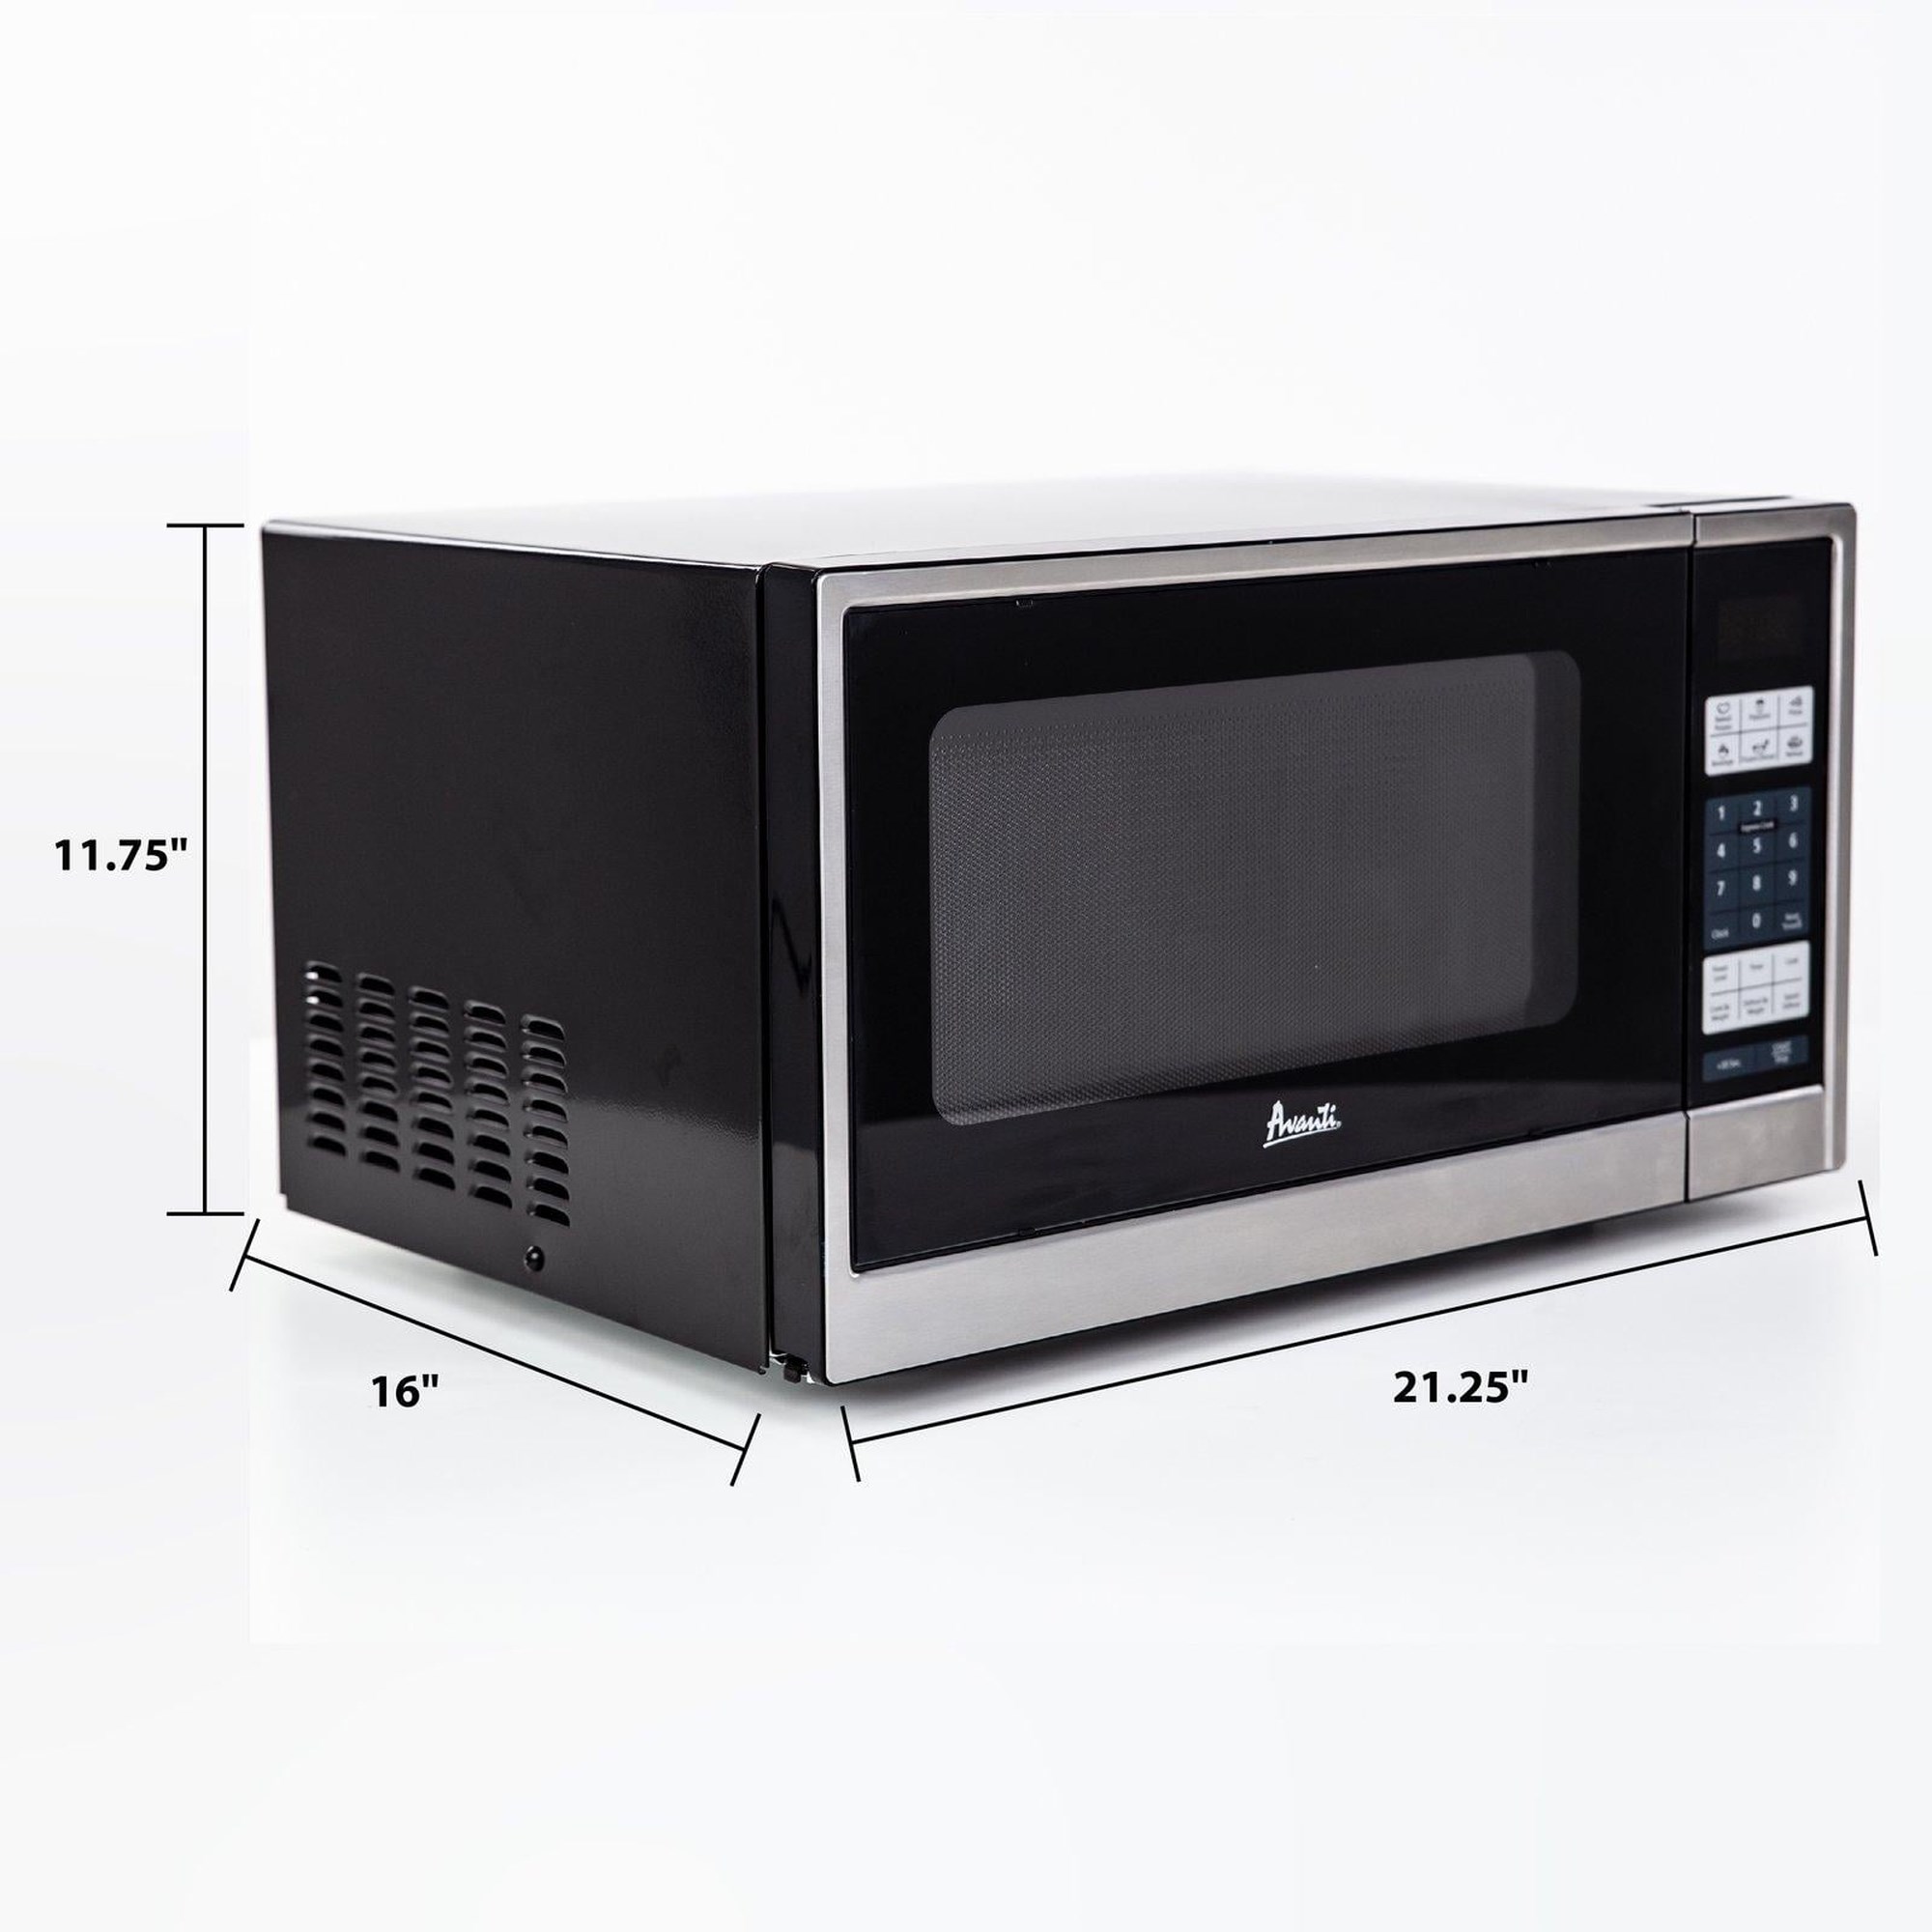 MT113K0W by Avanti - 1.1 cu. ft. Microwave Oven